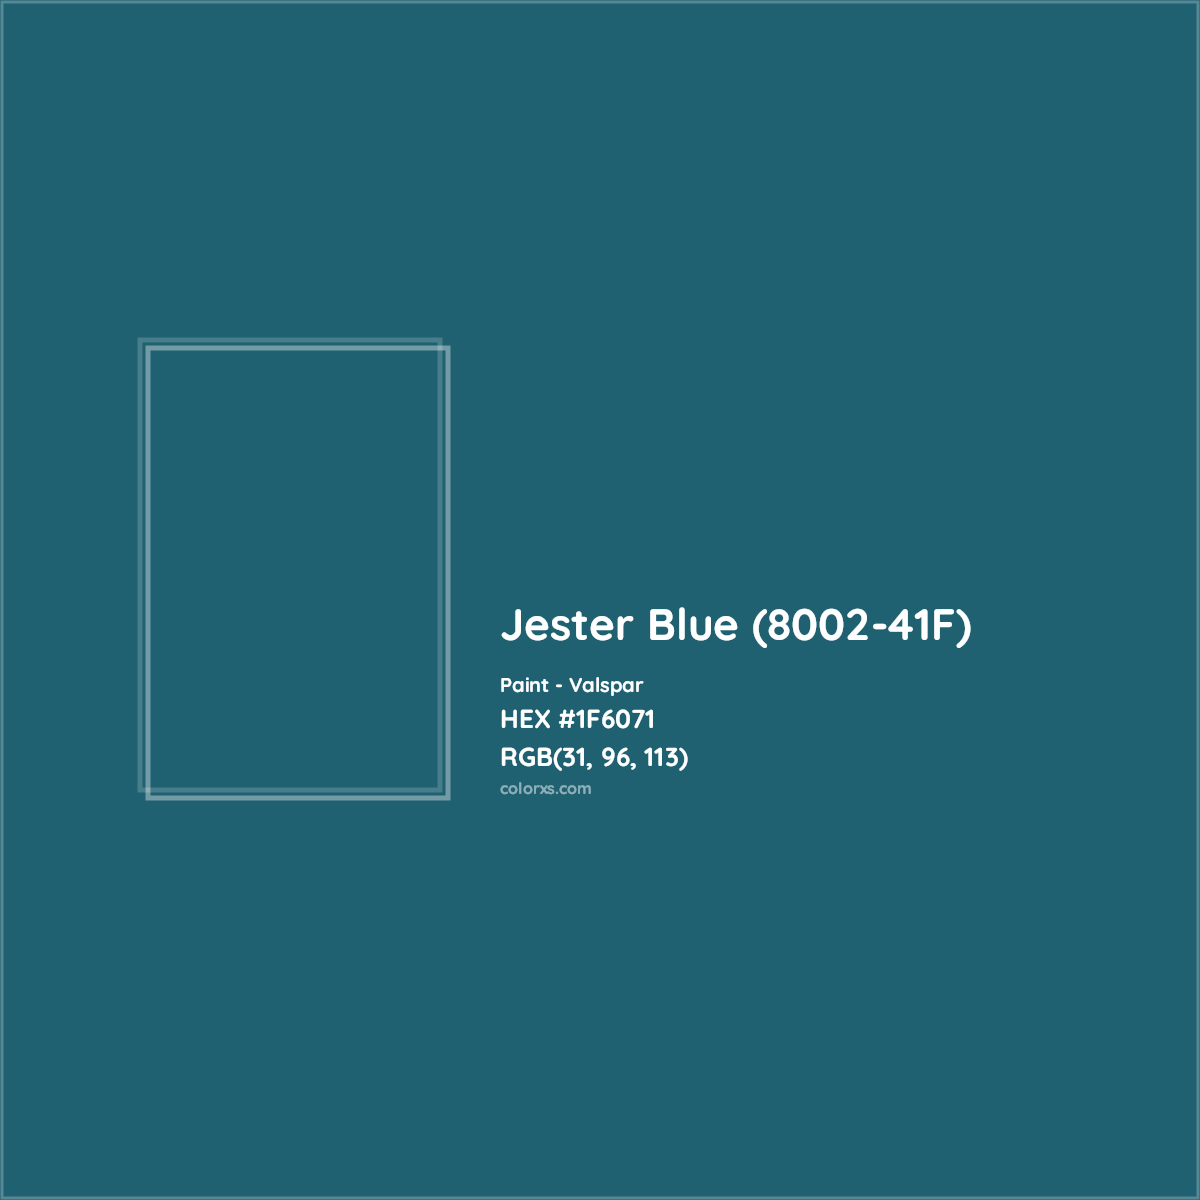 HEX #1F6071 Jester Blue (8002-41F) Paint Valspar - Color Code